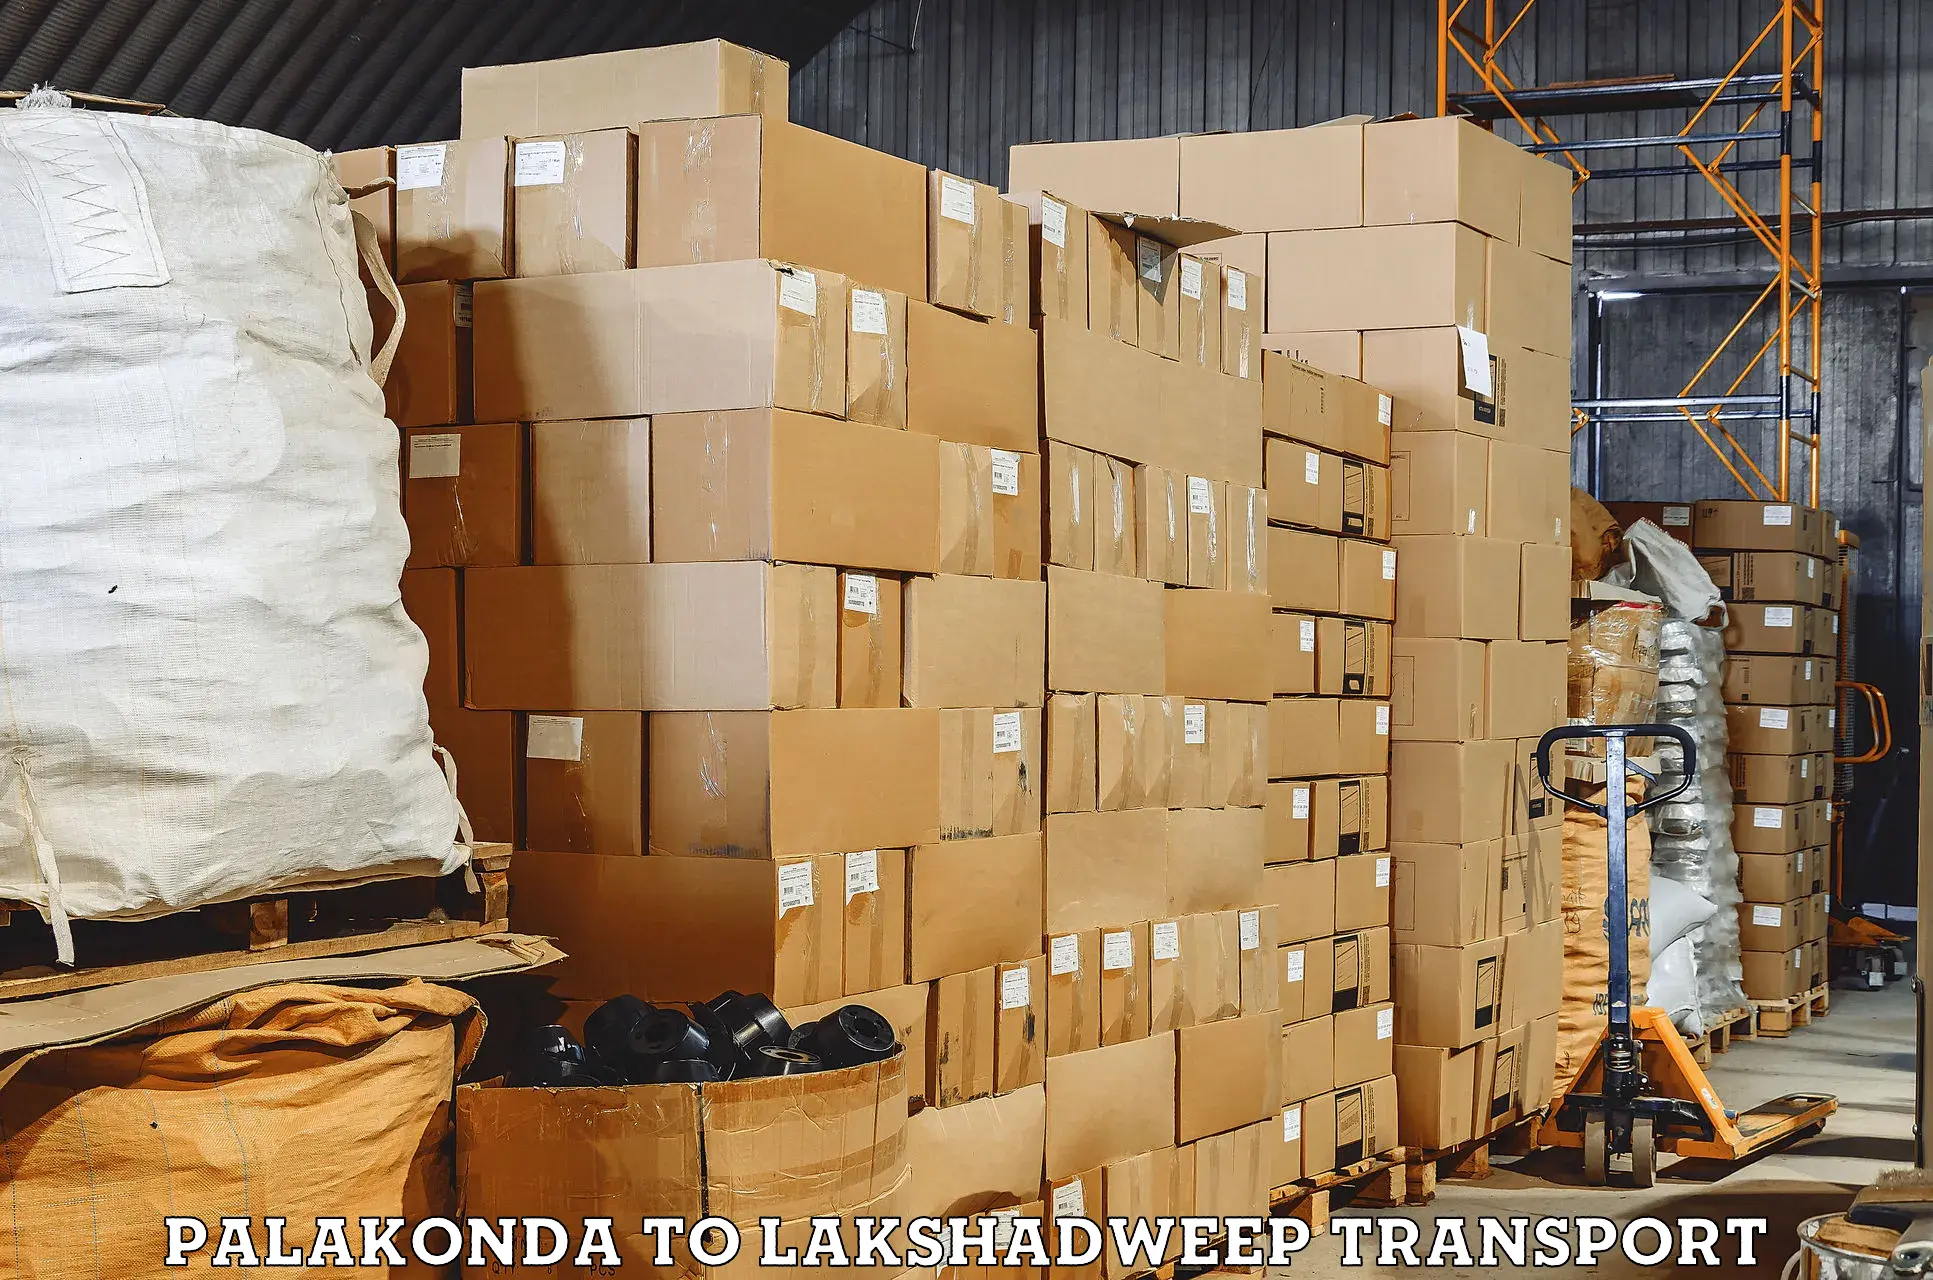 Furniture transport service Palakonda to Lakshadweep